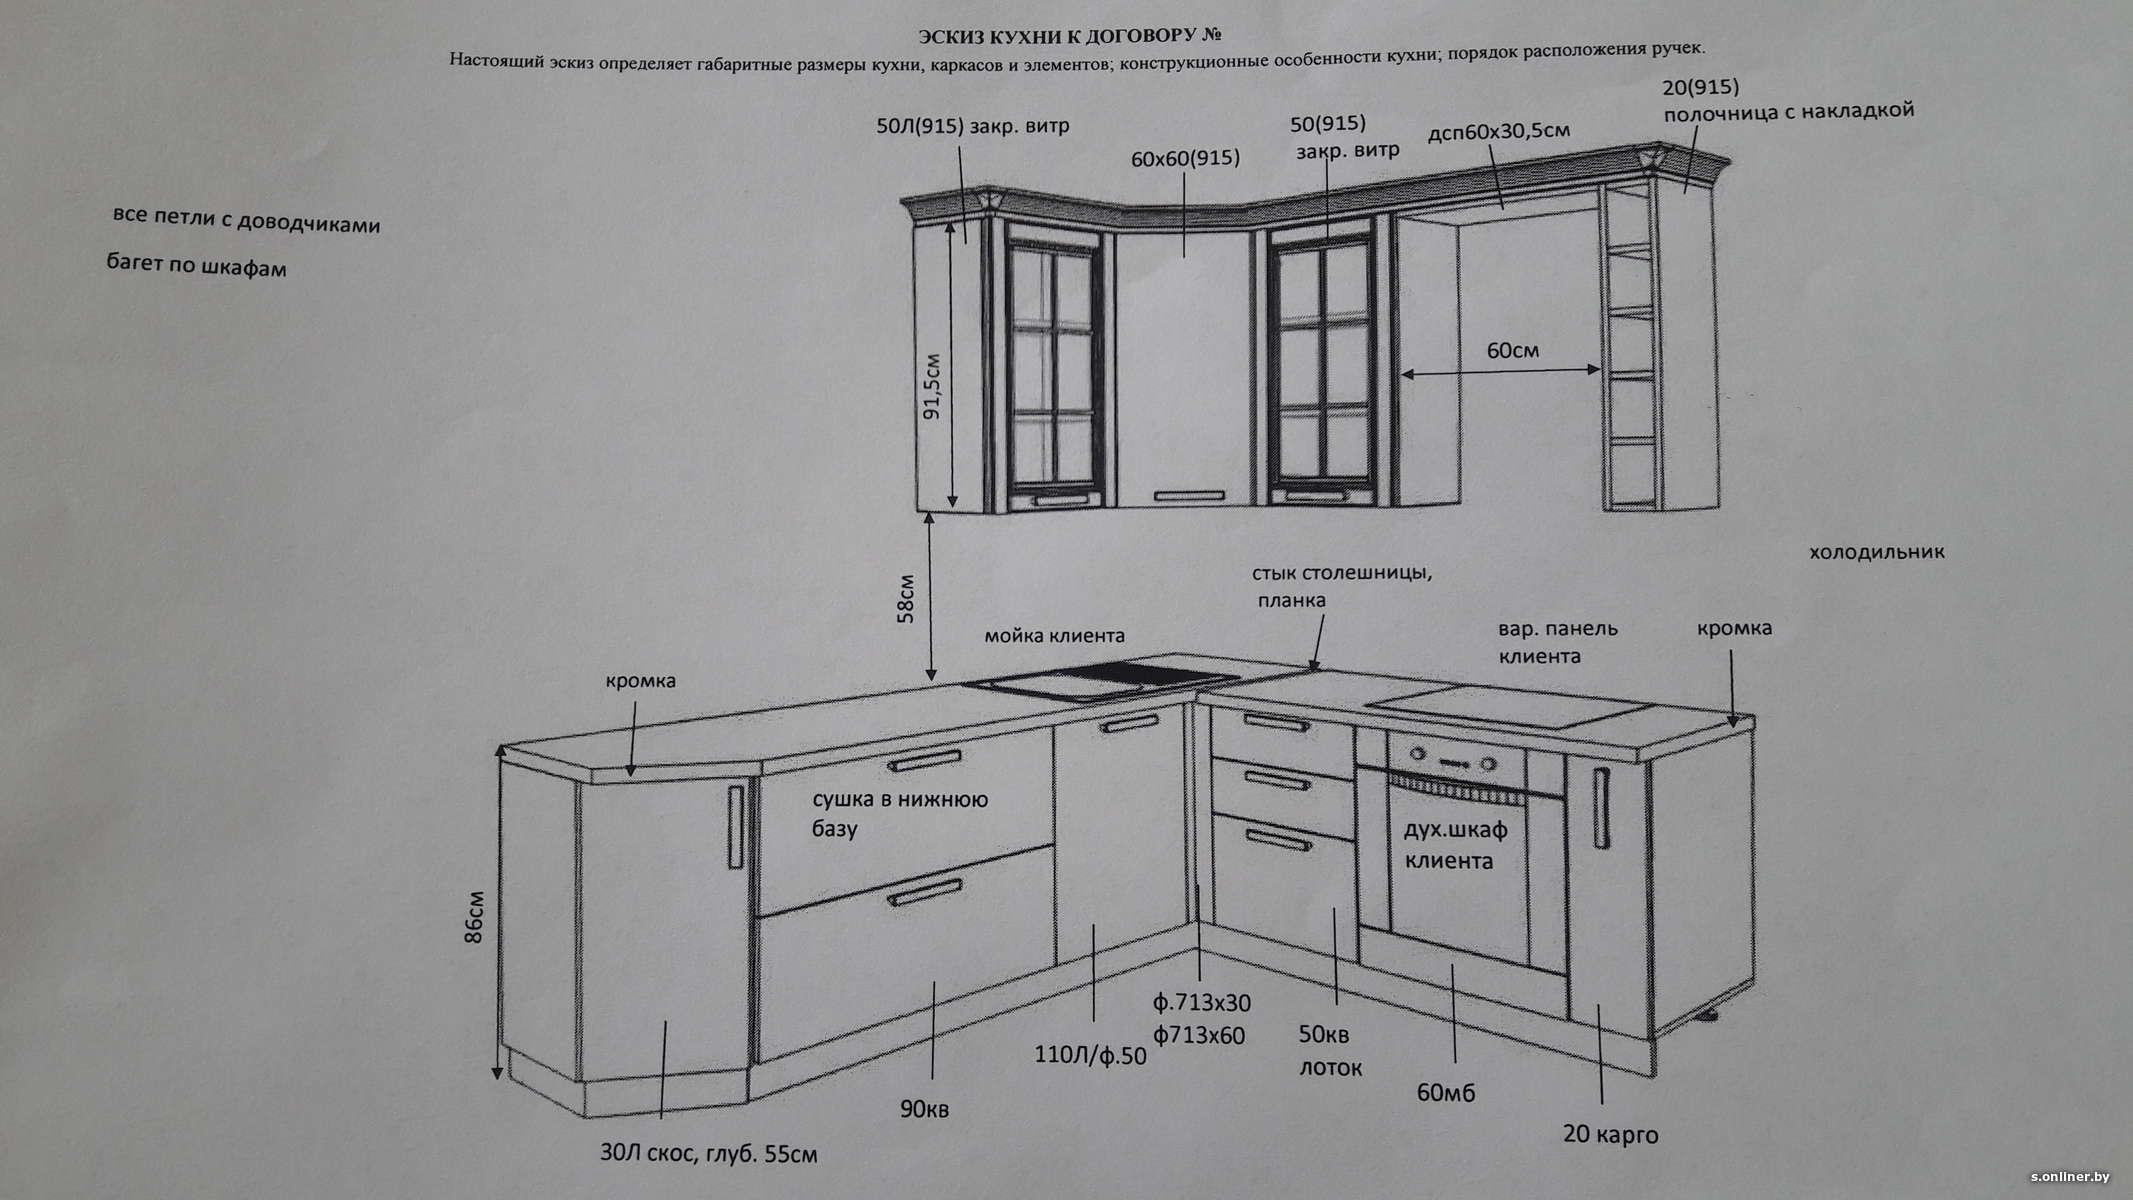 высота кухонных шкафчиков от пола до верха столешницы